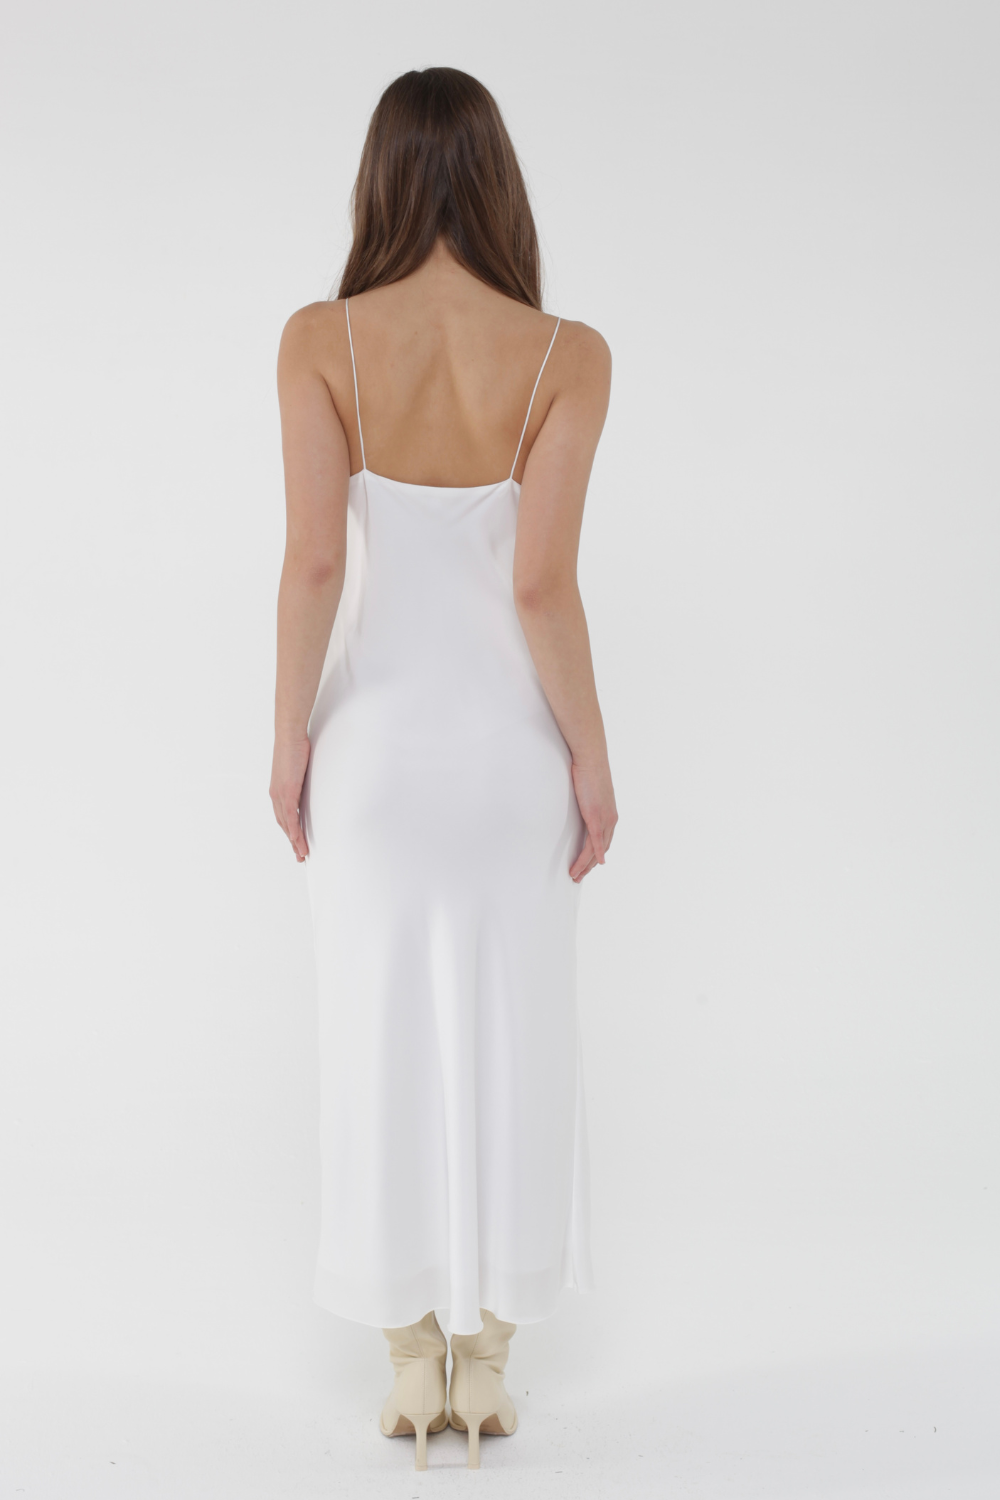 Сукня комбінована з чашкою на тонких бритвах, біла (MissSecret) DR-040-white